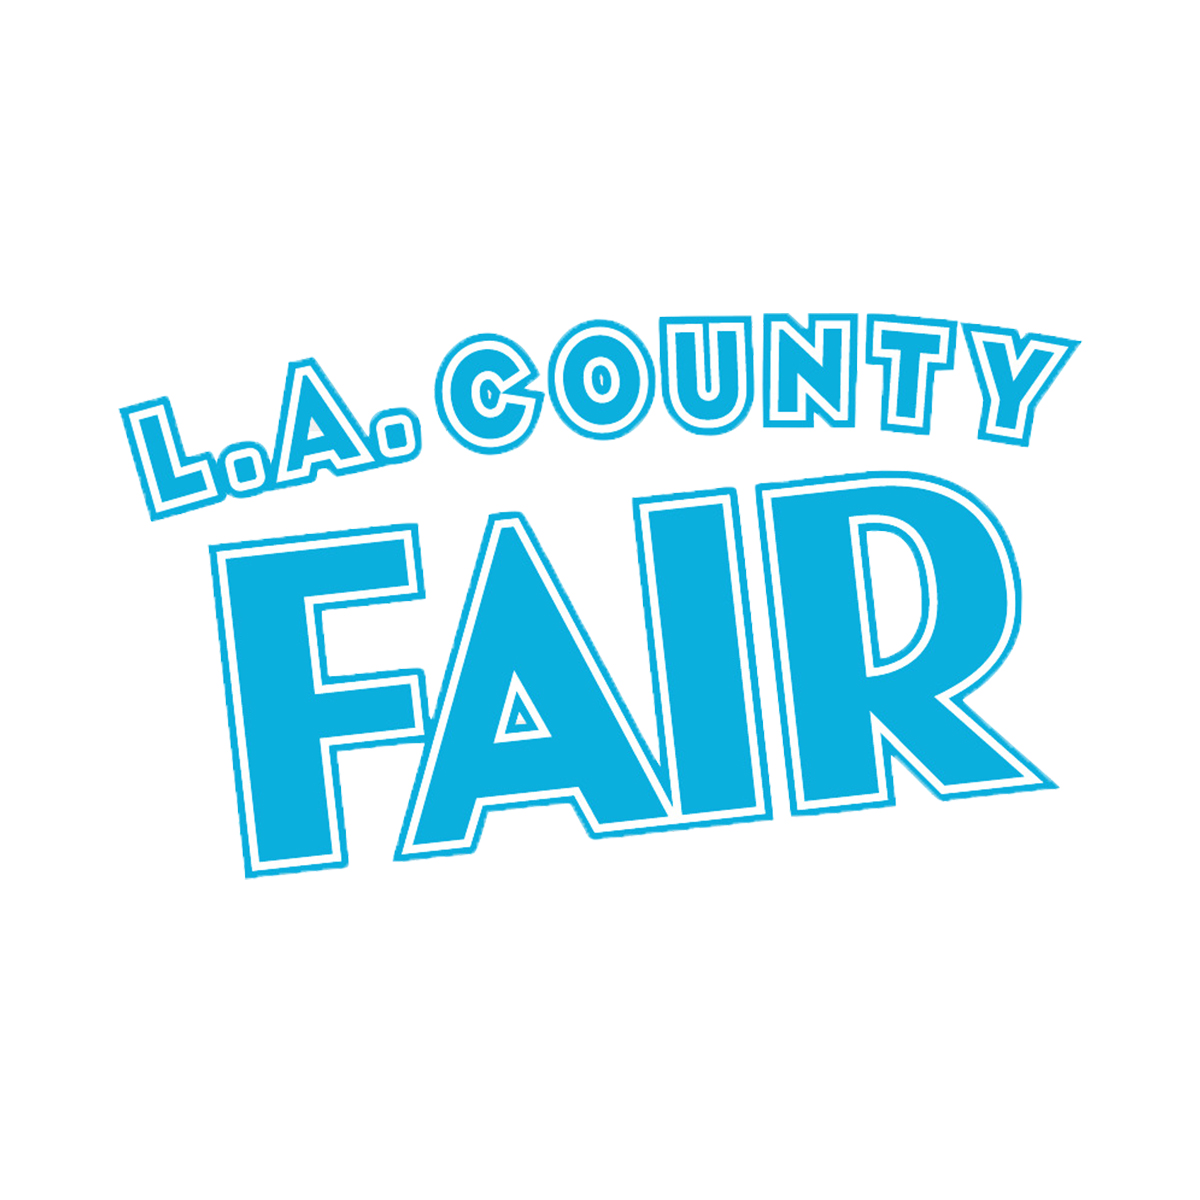 Deyaa Logo Carousel_0013_la county fair.jpg